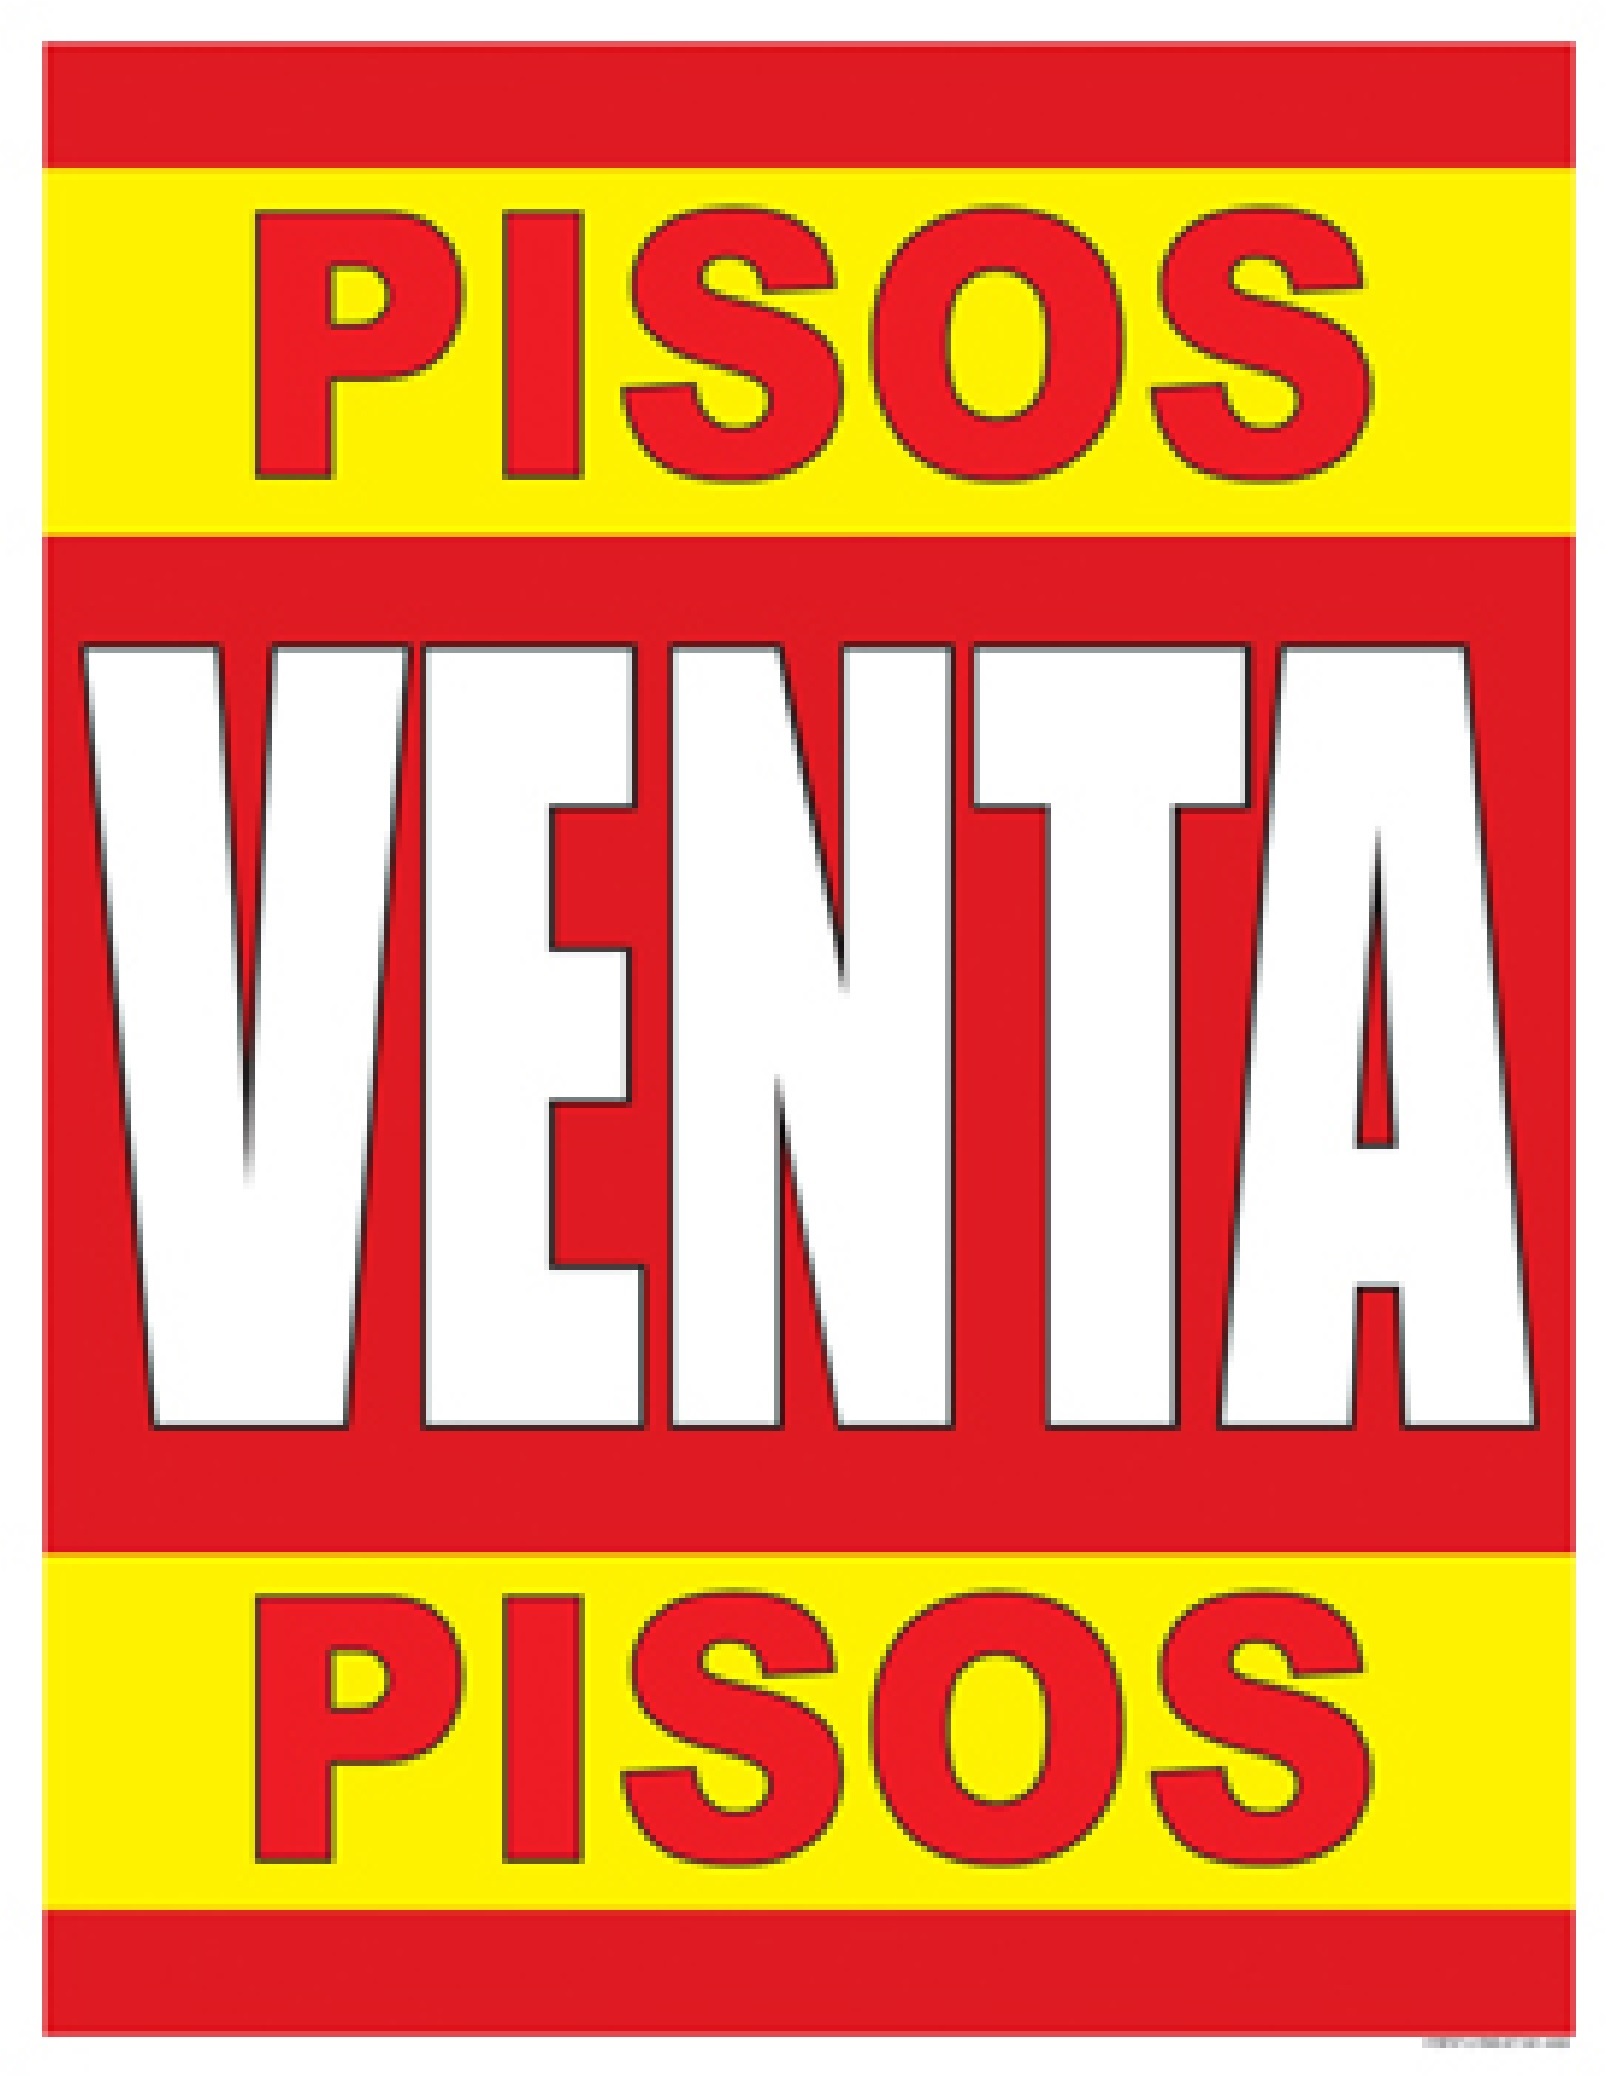 Pisos Venta Pisos SPANISH FLOORING SALE Window Poster Sign 38x50